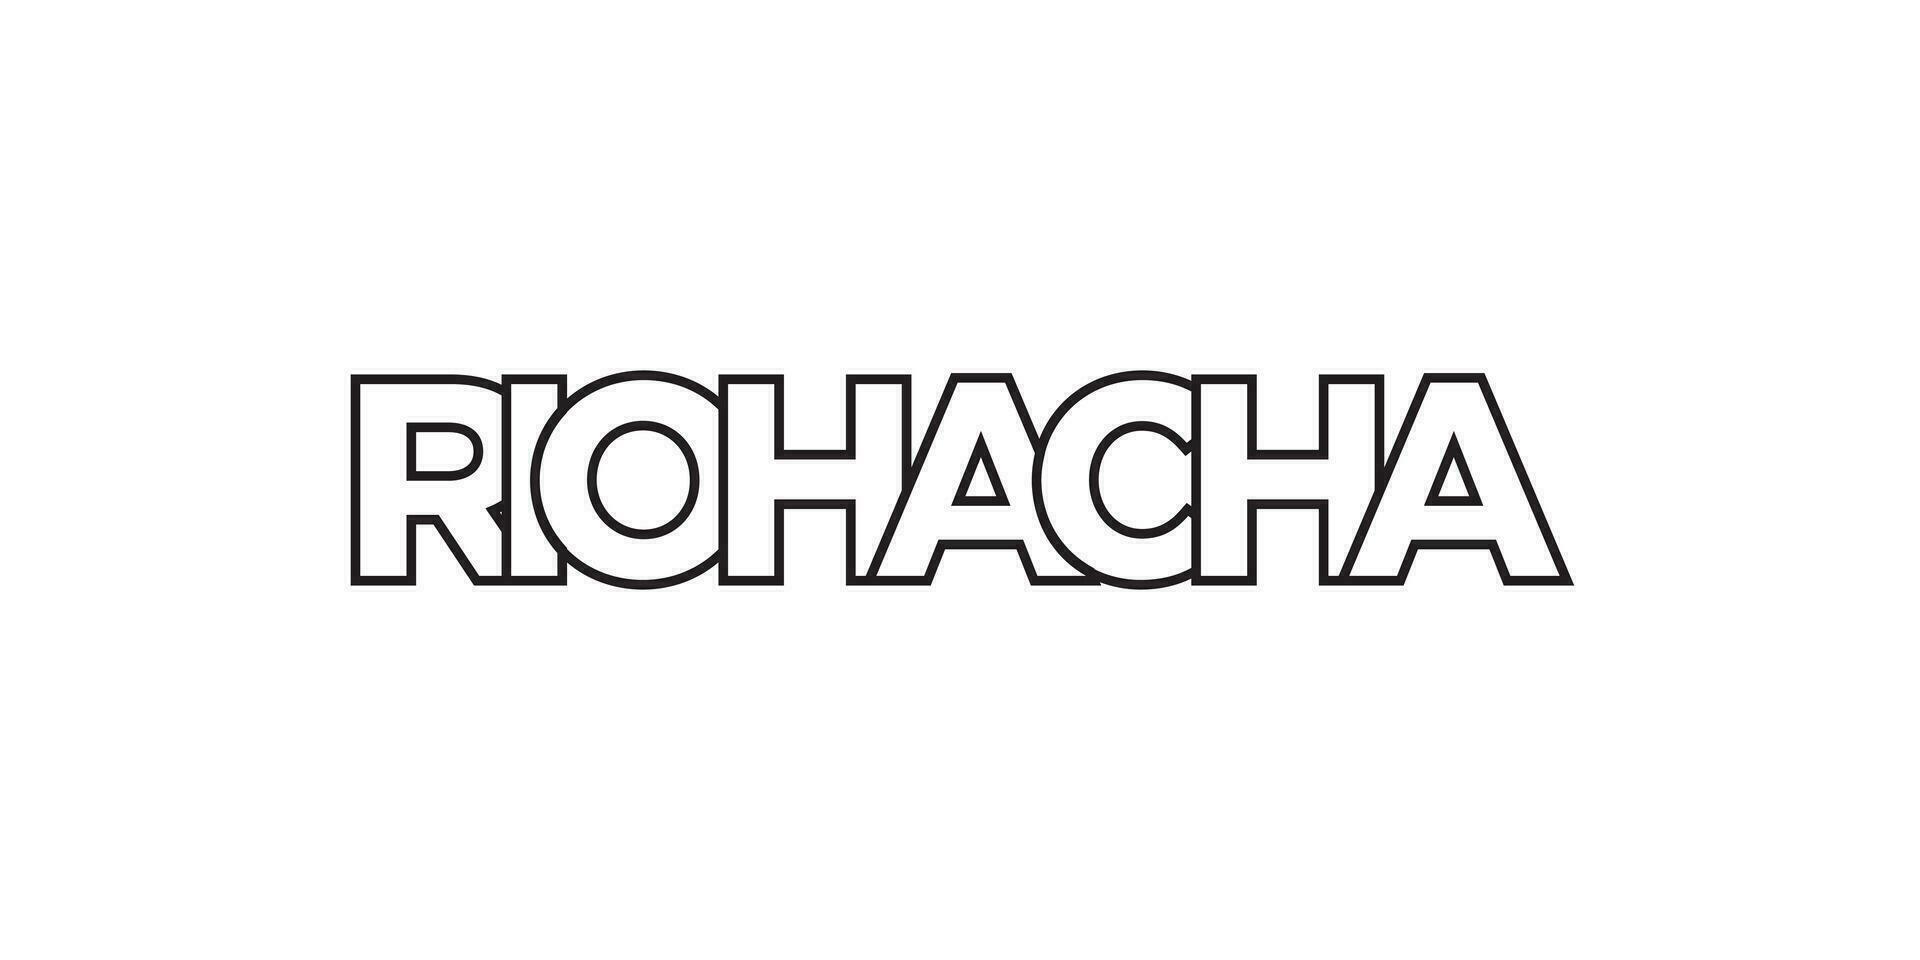 Riohacha im das Kolumbien Emblem. das Design Eigenschaften ein geometrisch Stil, Vektor Illustration mit Fett gedruckt Typografie im ein modern Schriftart. das Grafik Slogan Beschriftung.